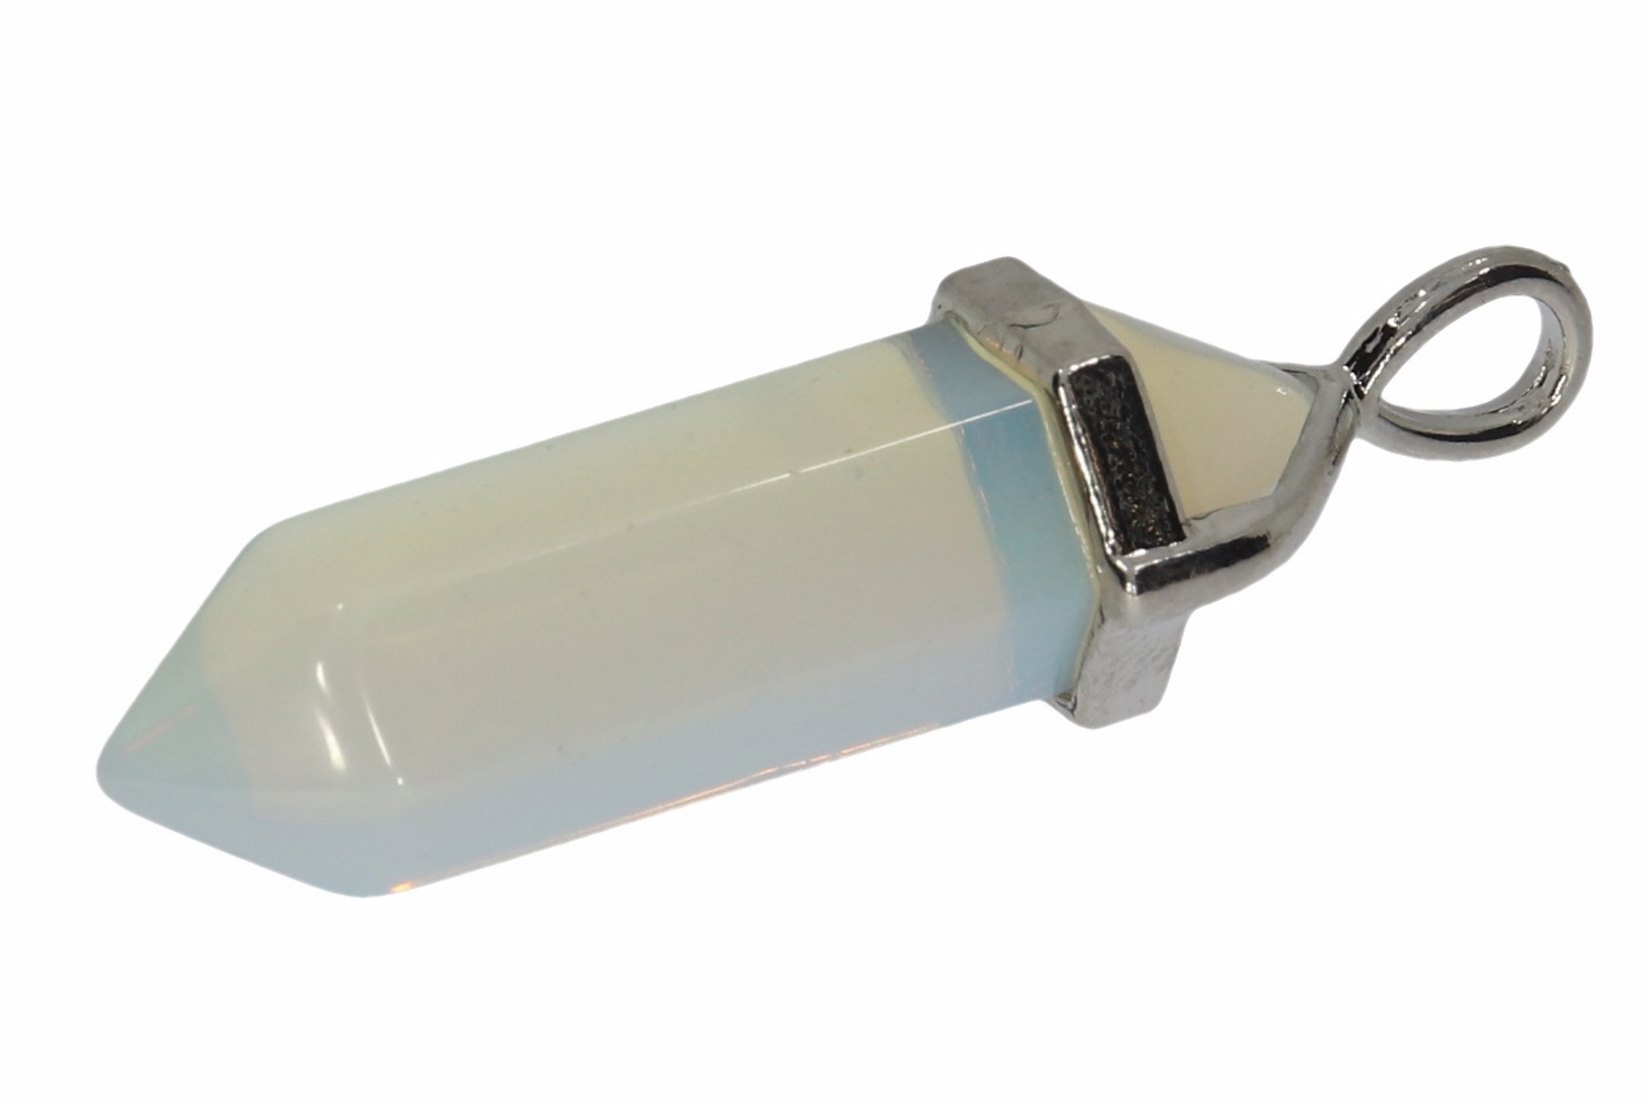 Opal glas Doppelspitze Schmuck Anhänger Öse Silber farben 40x11mm - HS1357